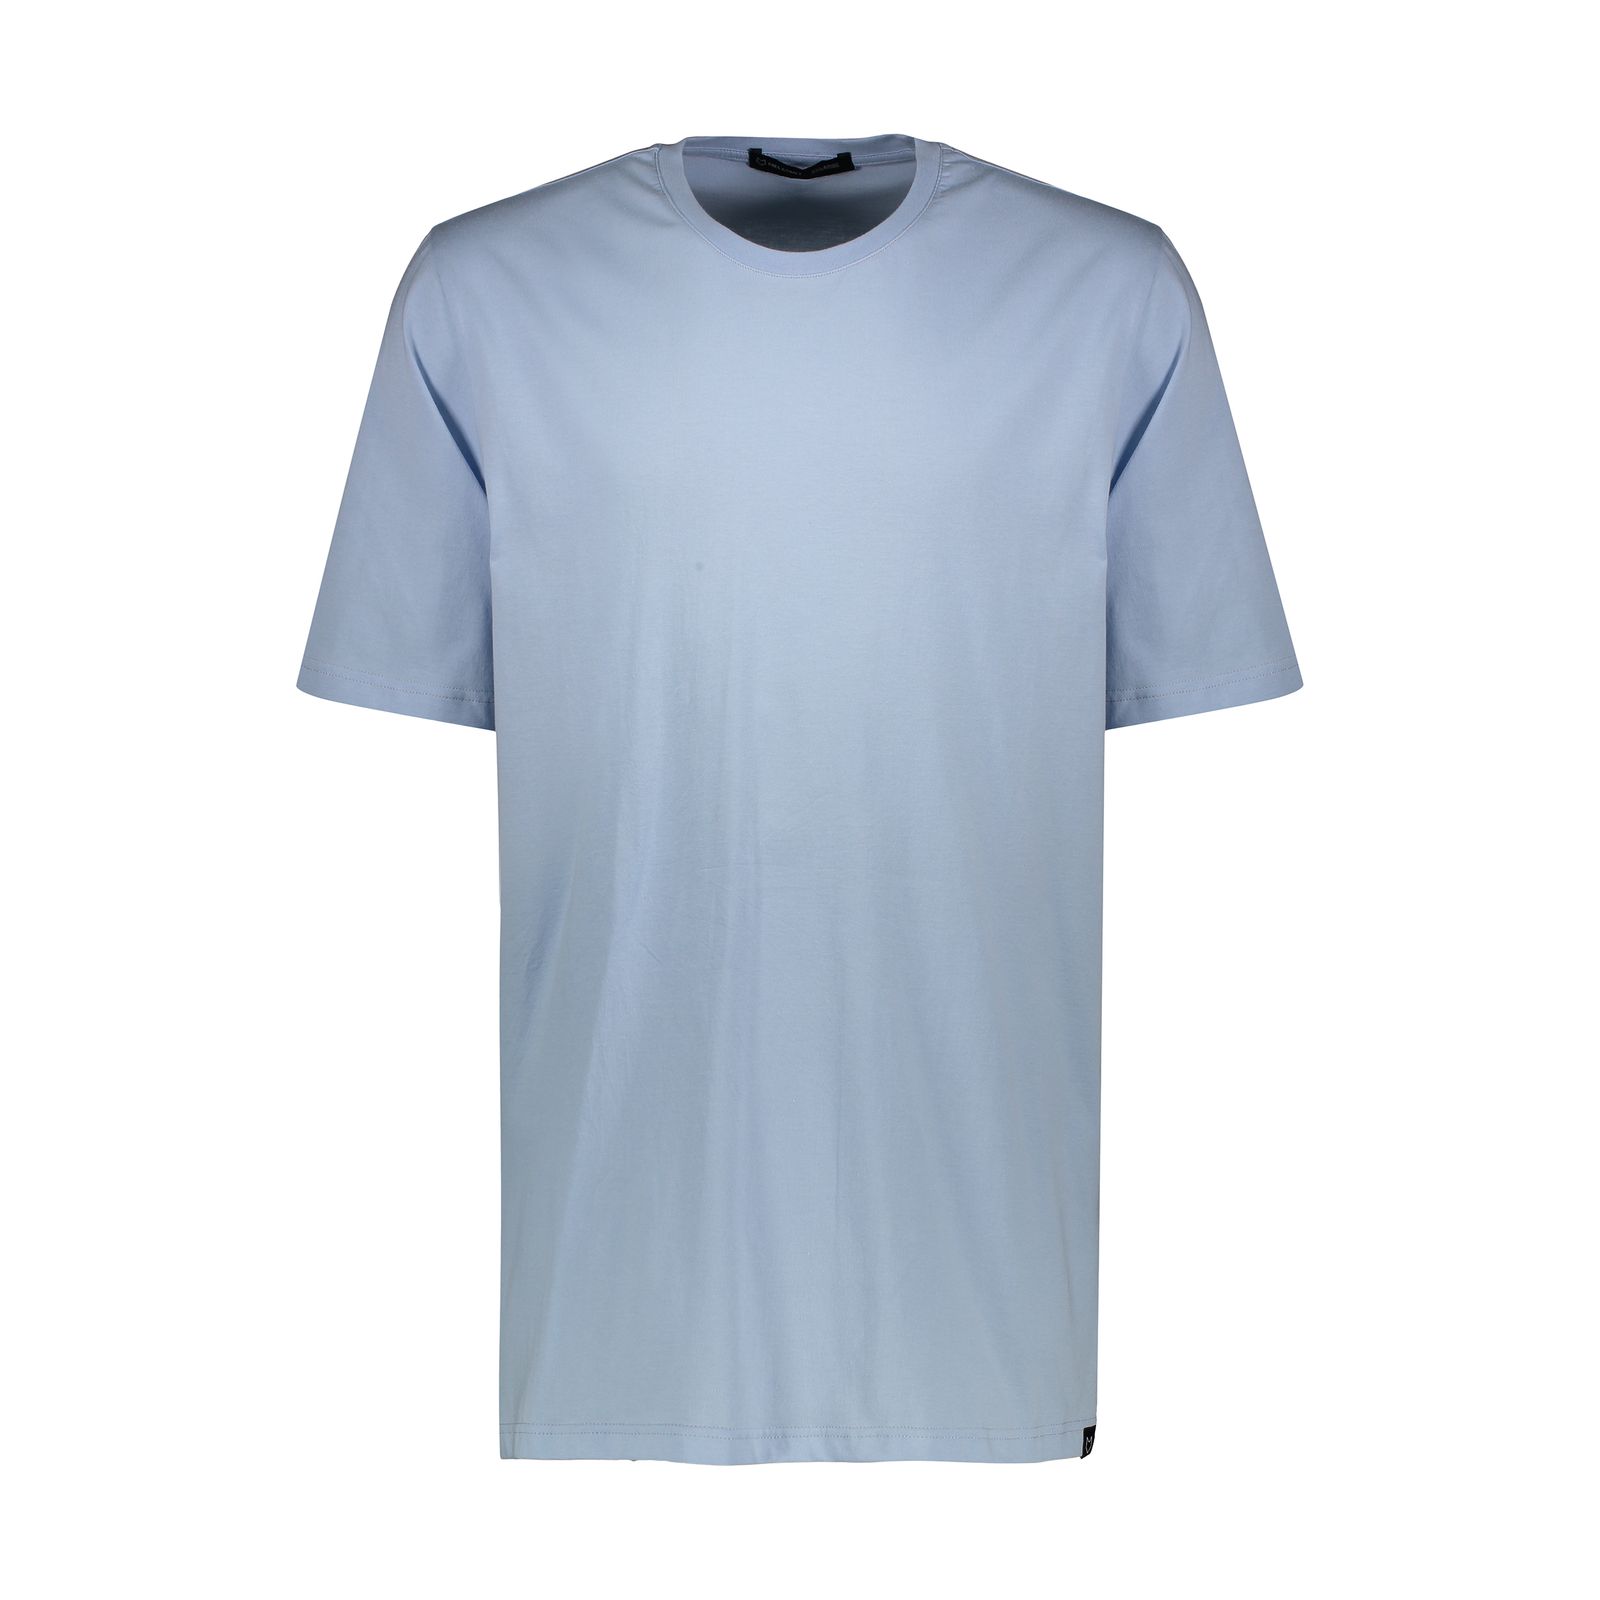 تی شرت آستین کوتاه ورزشی مردانه مل اند موژ مدل M07782-004 -  - 1